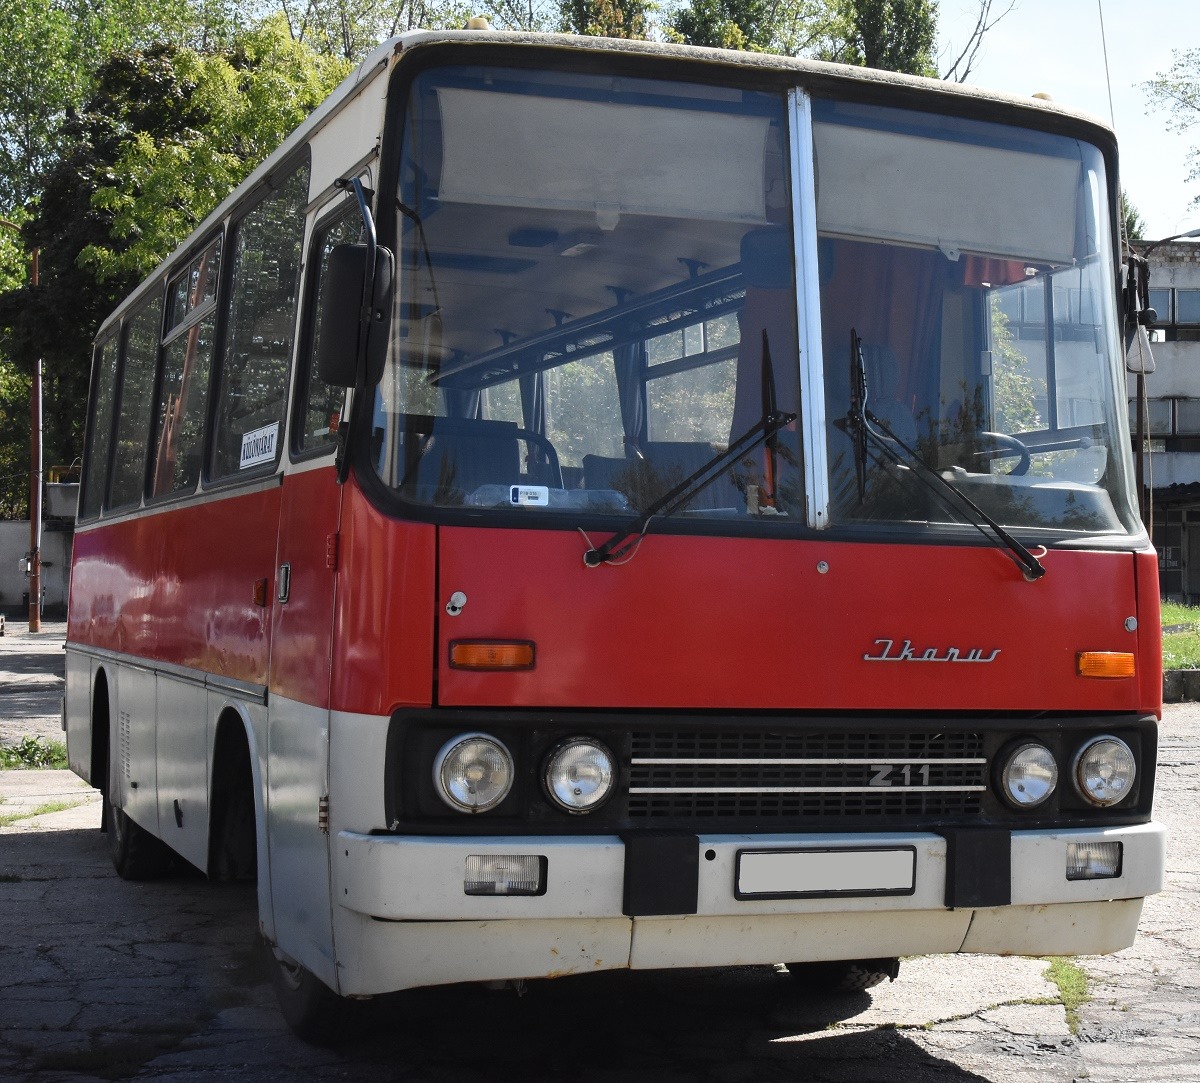 A Közlekedési Múzeum Ikarus 211-ese a típus gyártásának utolsó évében, 1990-ben készült (fotók: Közlekedési Múzeum)